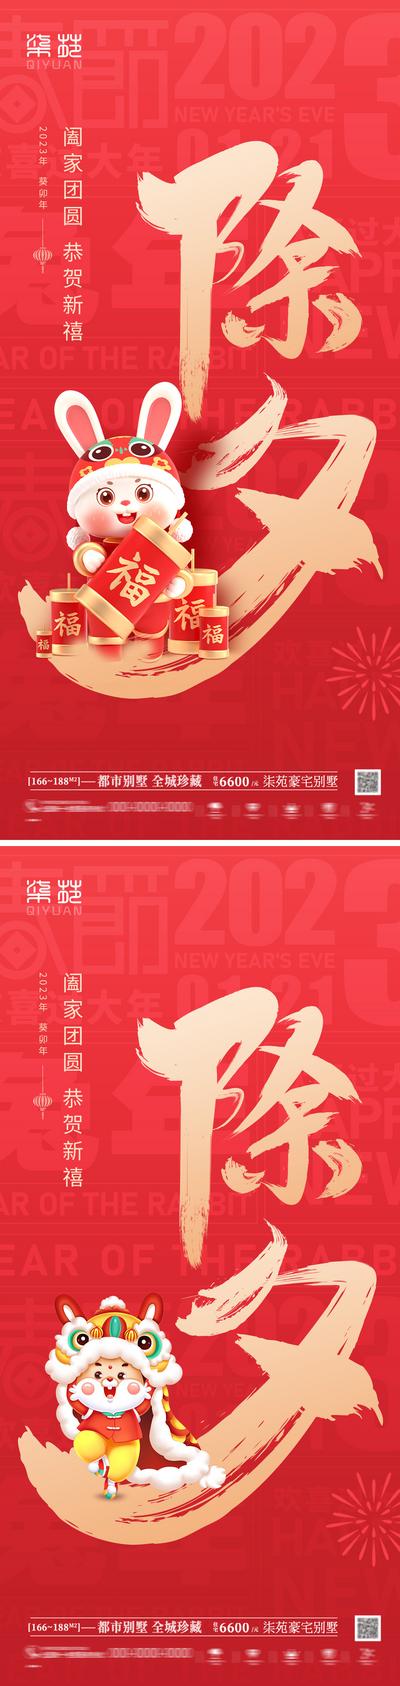 南门网 海报 中国传统节日 除夕 兔年 兔子 系列